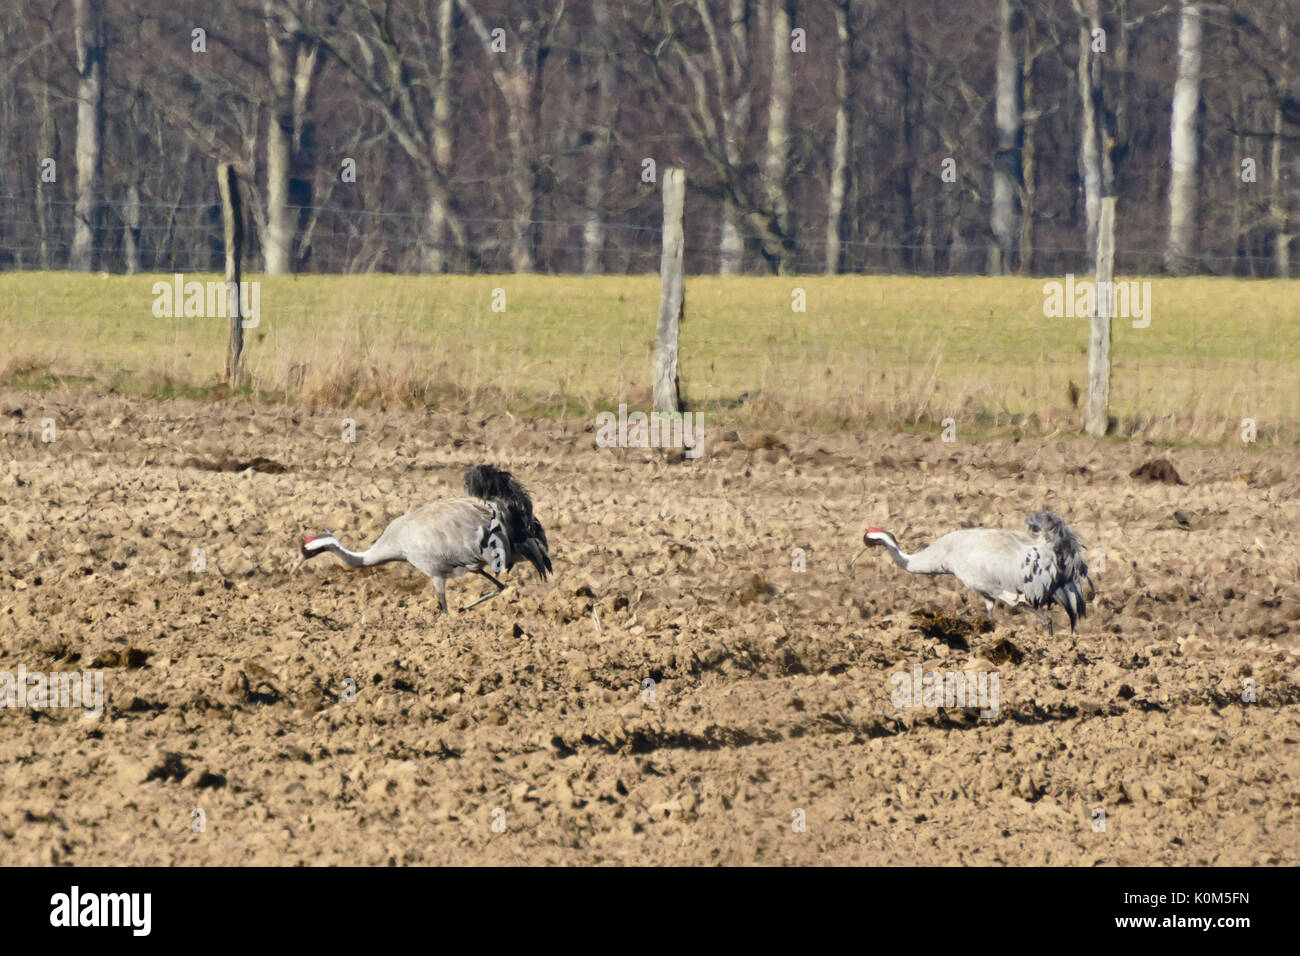 Grullas comunes (grus grus) en un campo, grullas comunes (grus grus) sur onu, champ brandebourg, Allemagne, Alemania Foto de stock